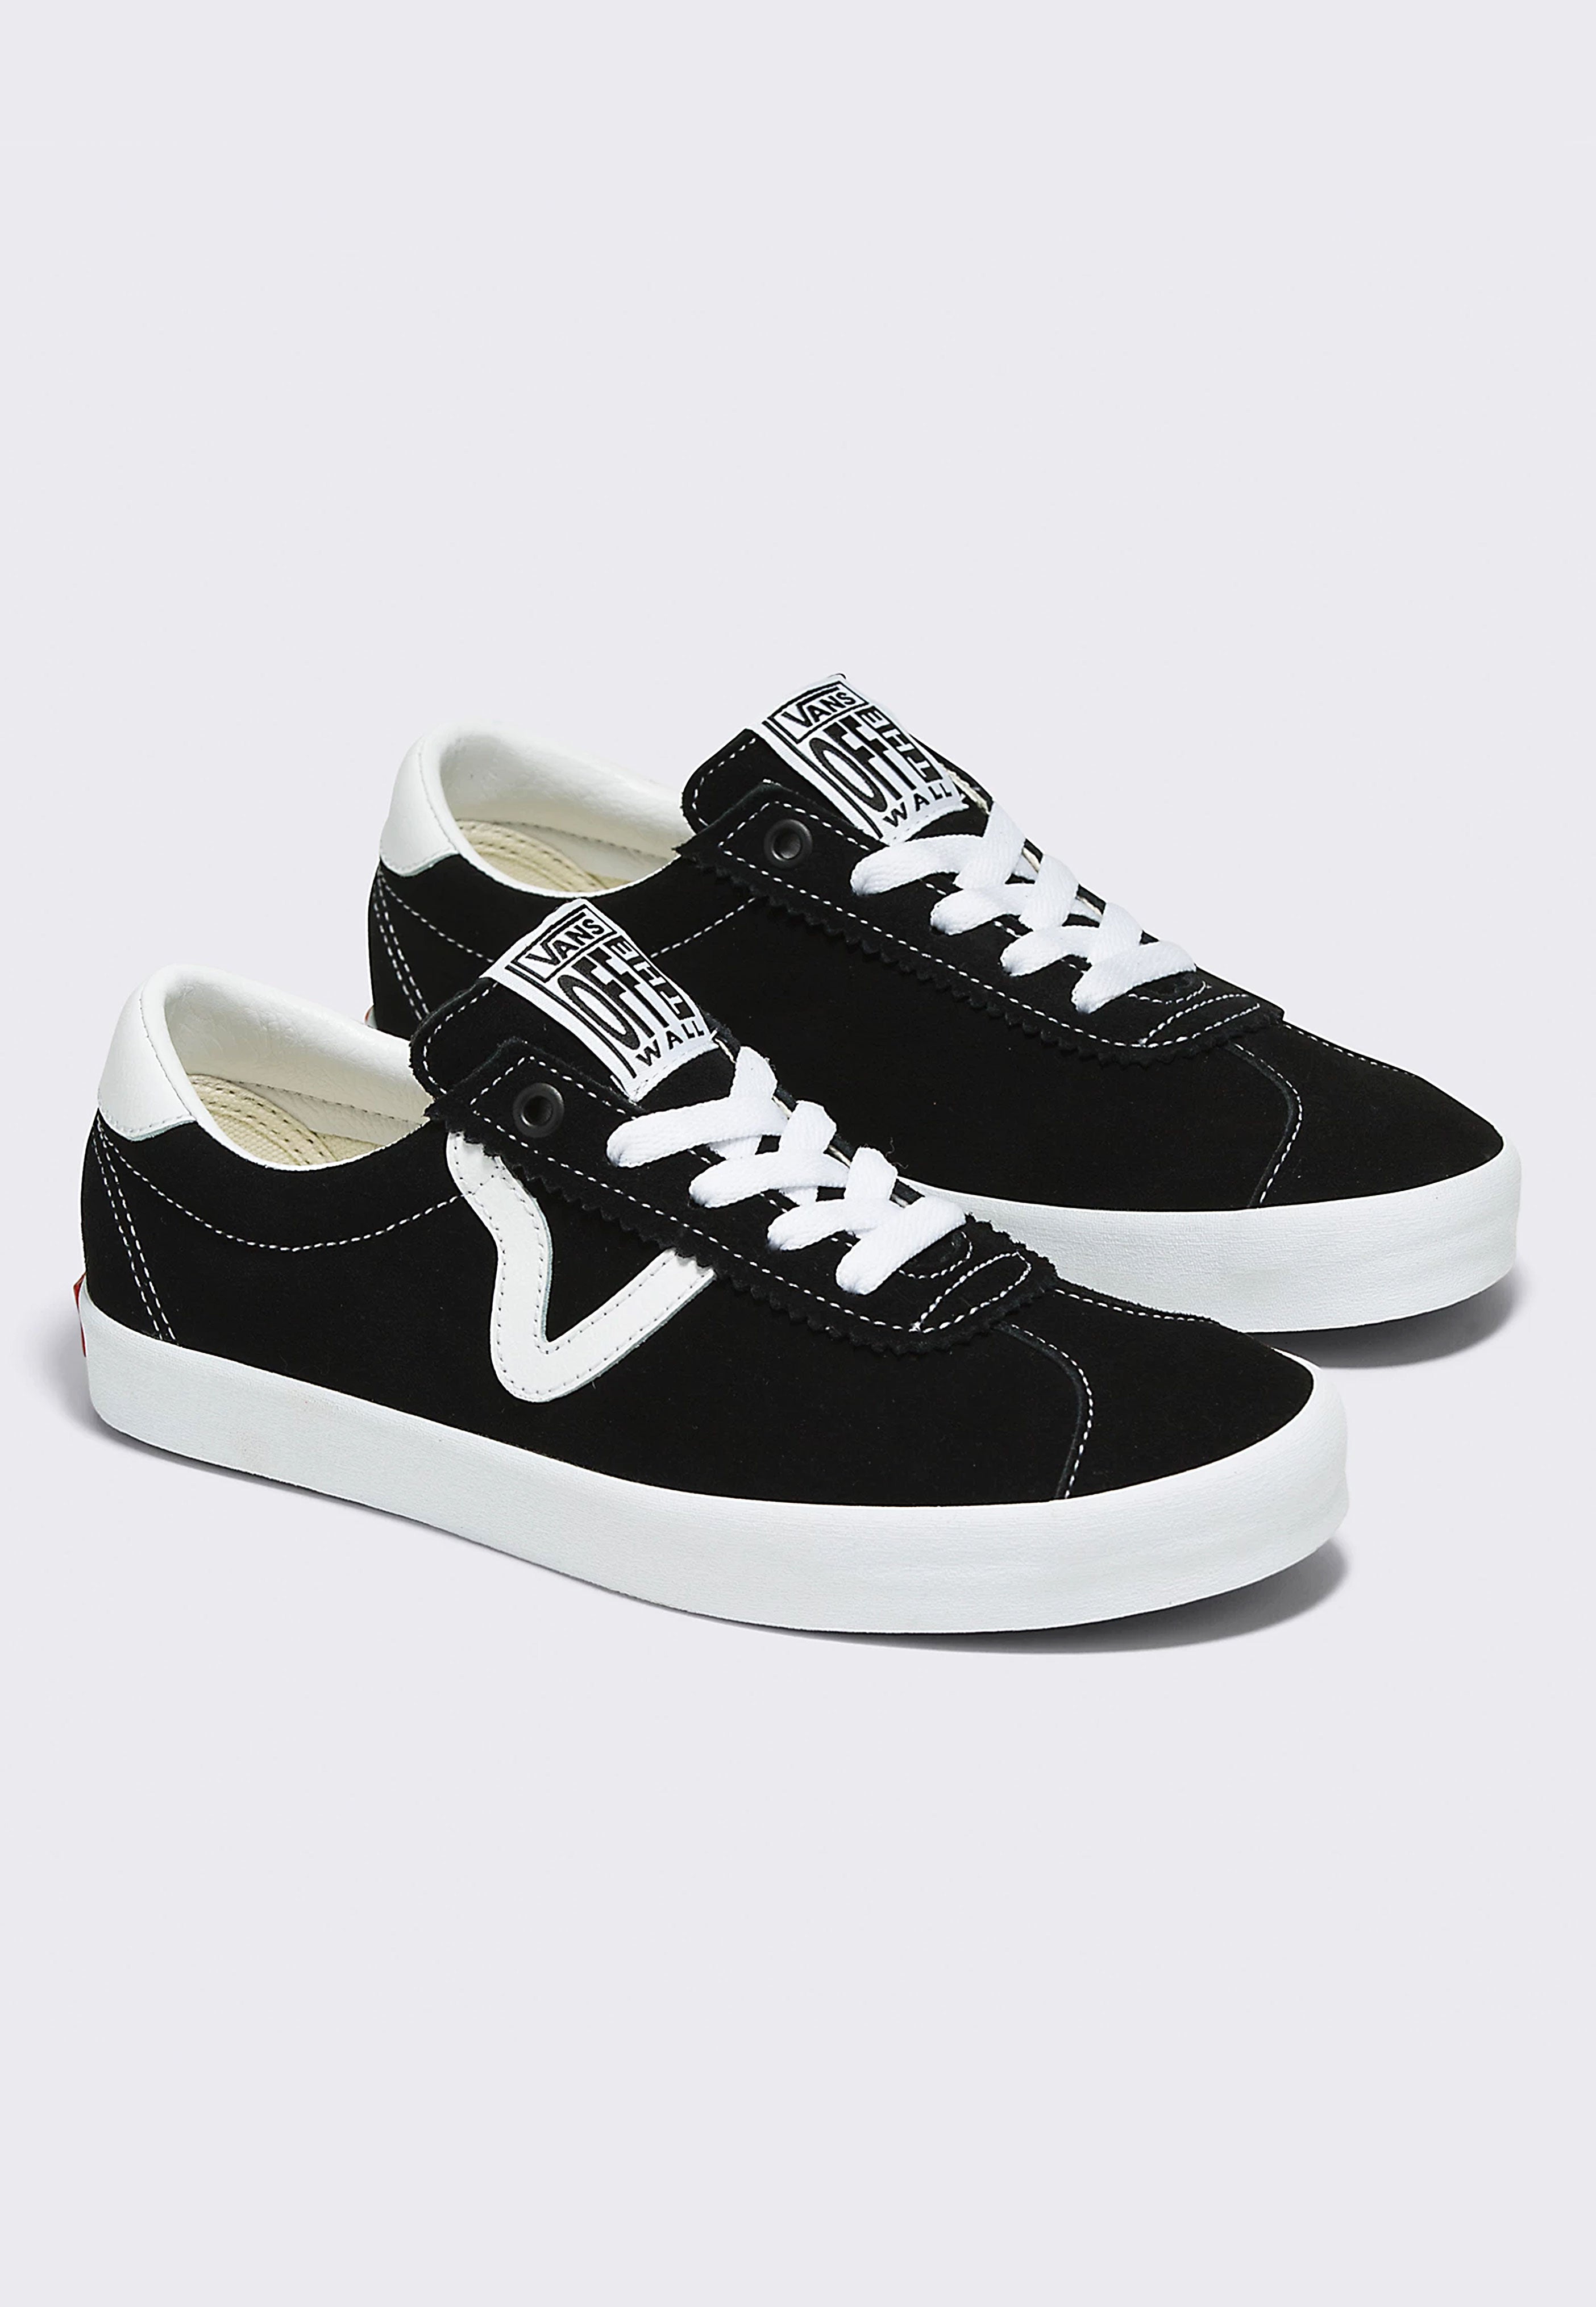 Vans - Sport Low Black/White - Shoes